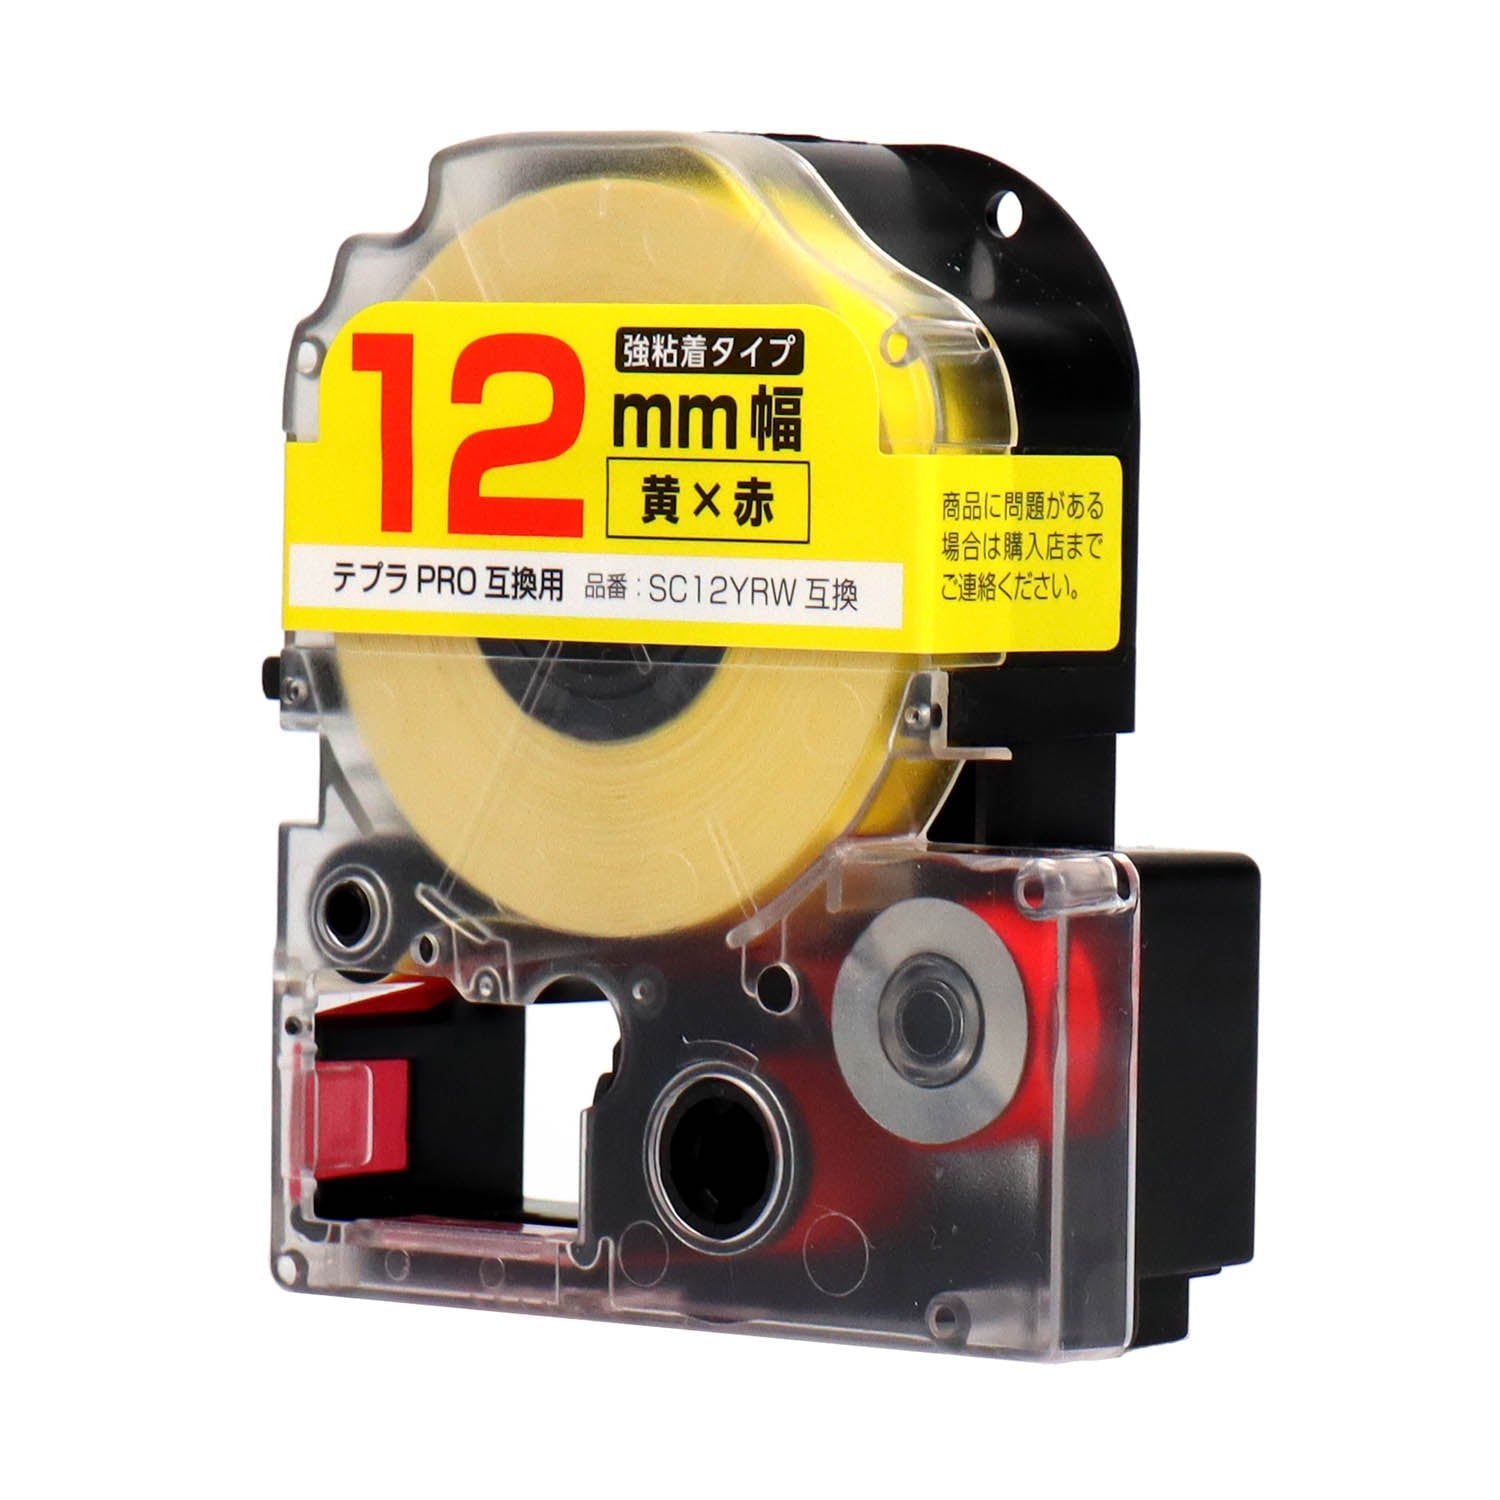 テプラPRO用互換テープカートリッジ 黄×赤文字 12mm